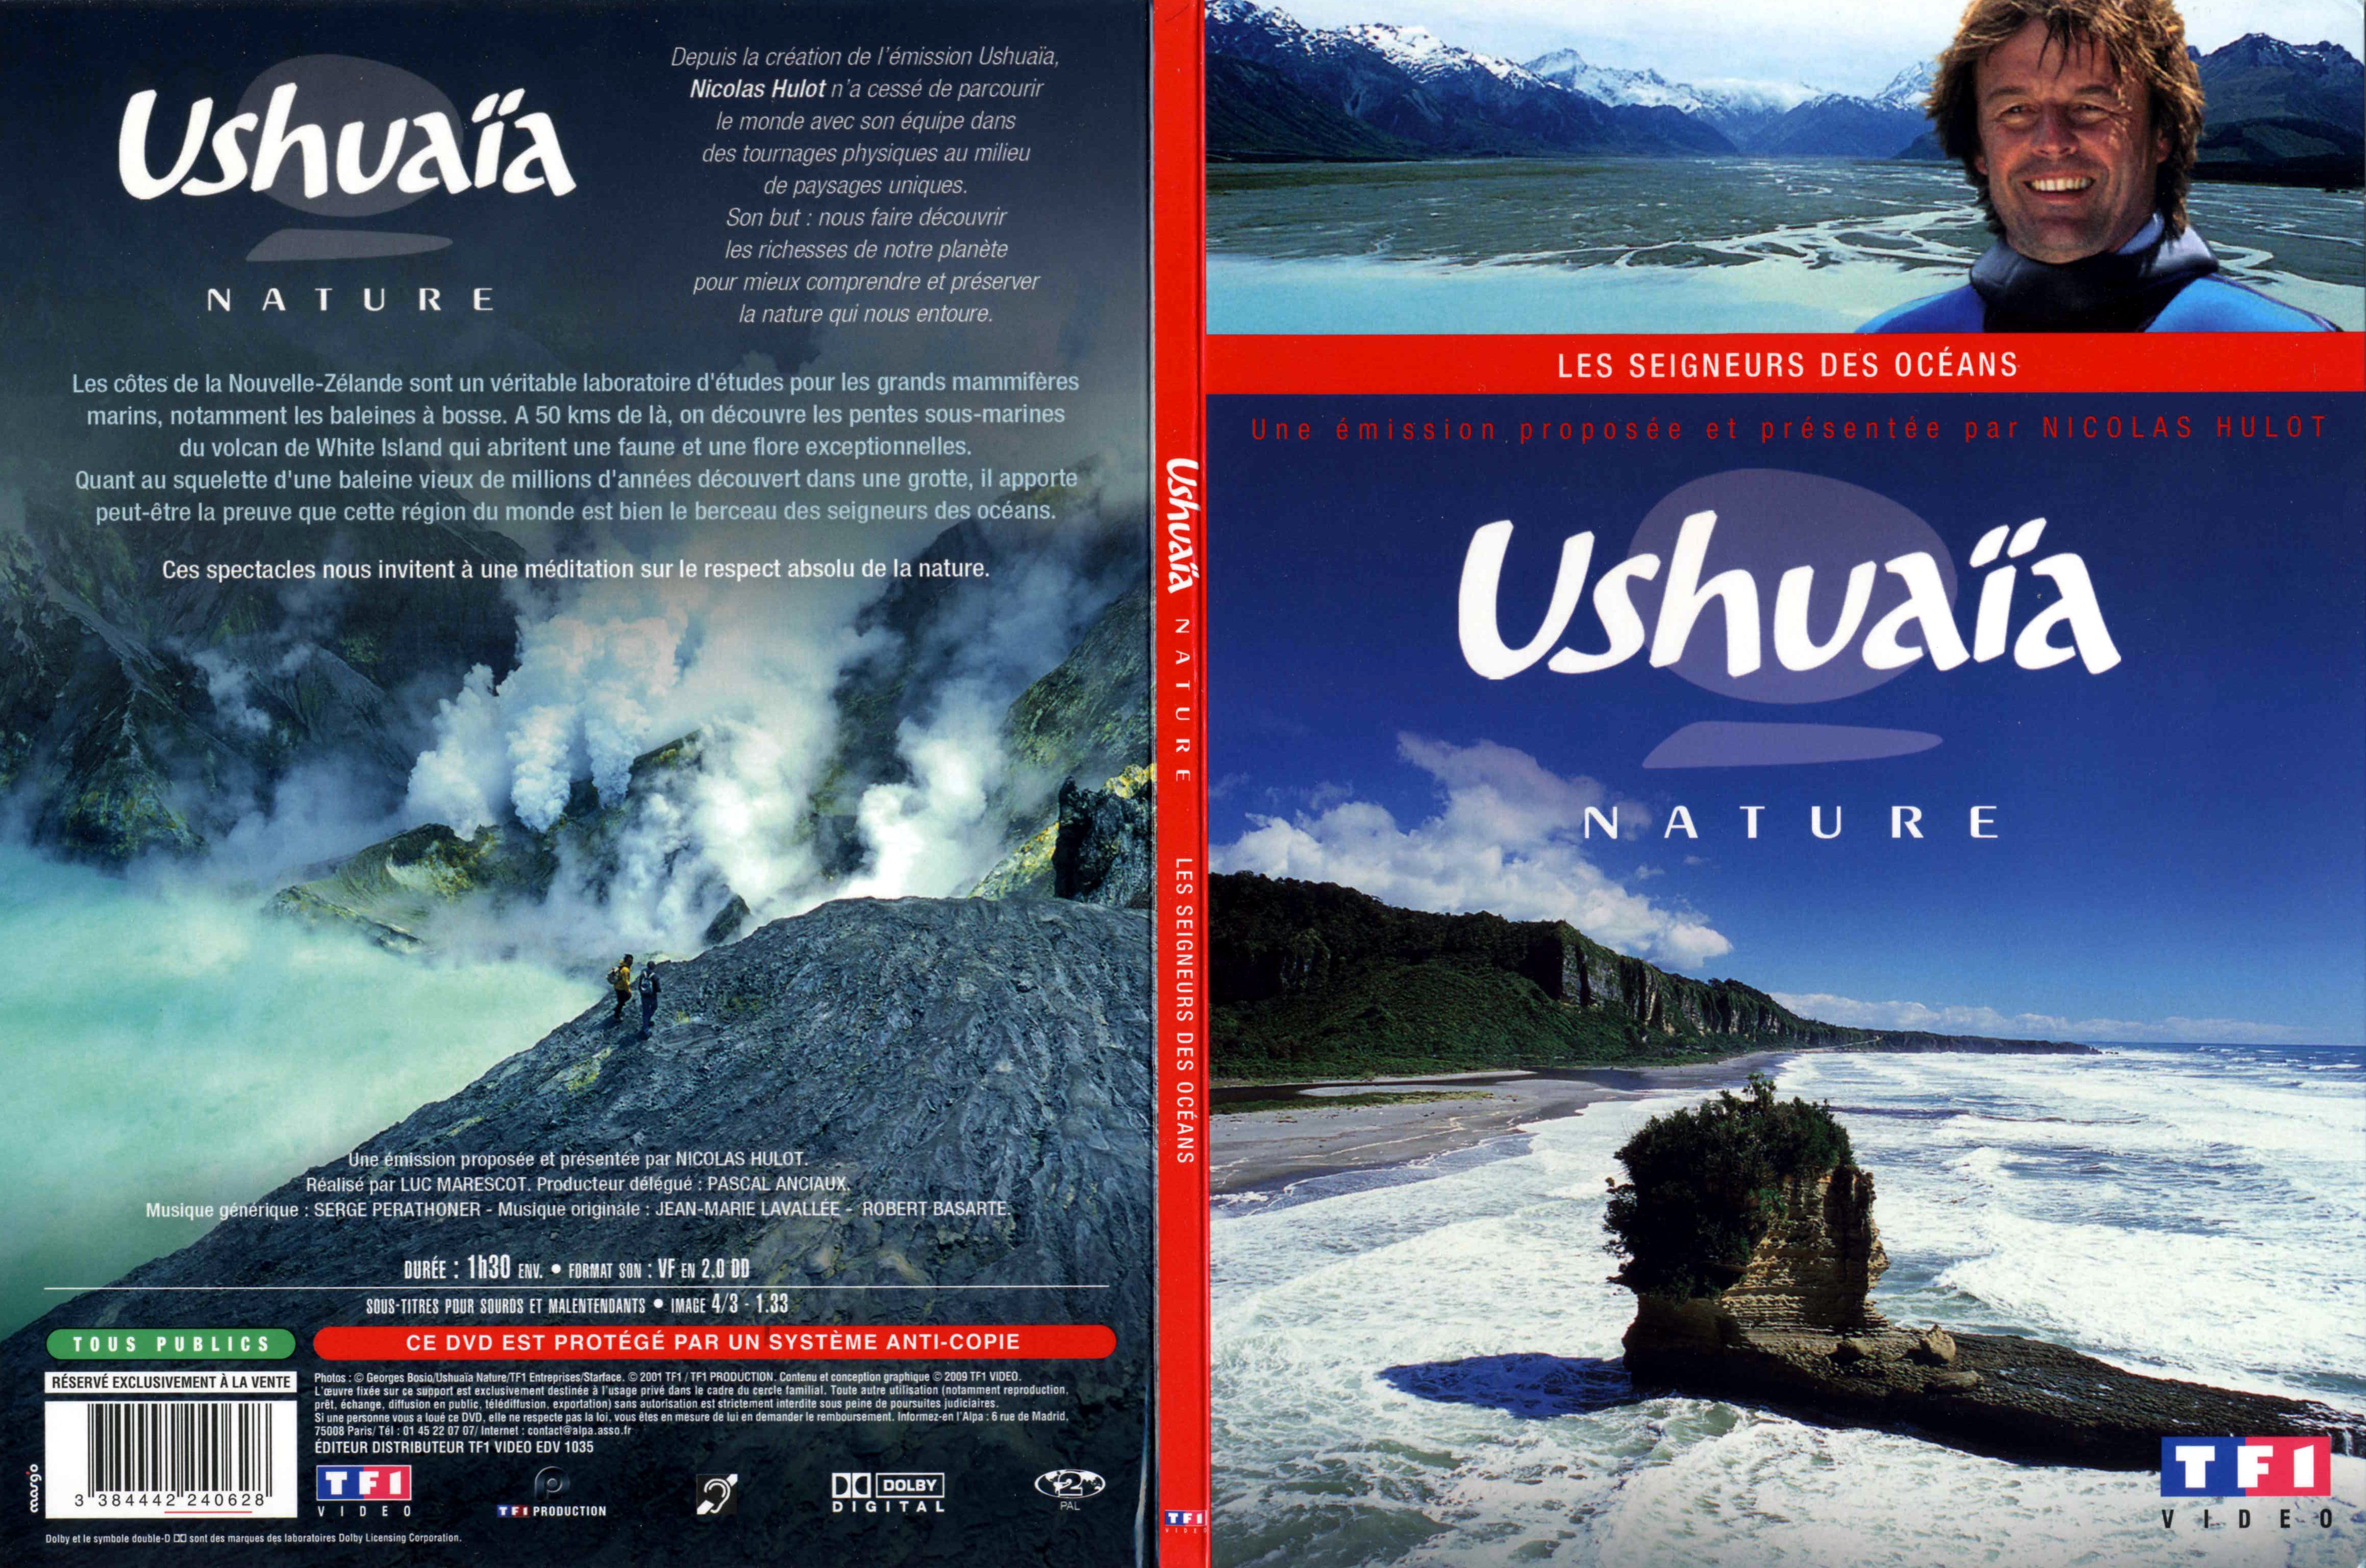 Jaquette DVD Ushuaia Nature - Les seigneurs des Oceans